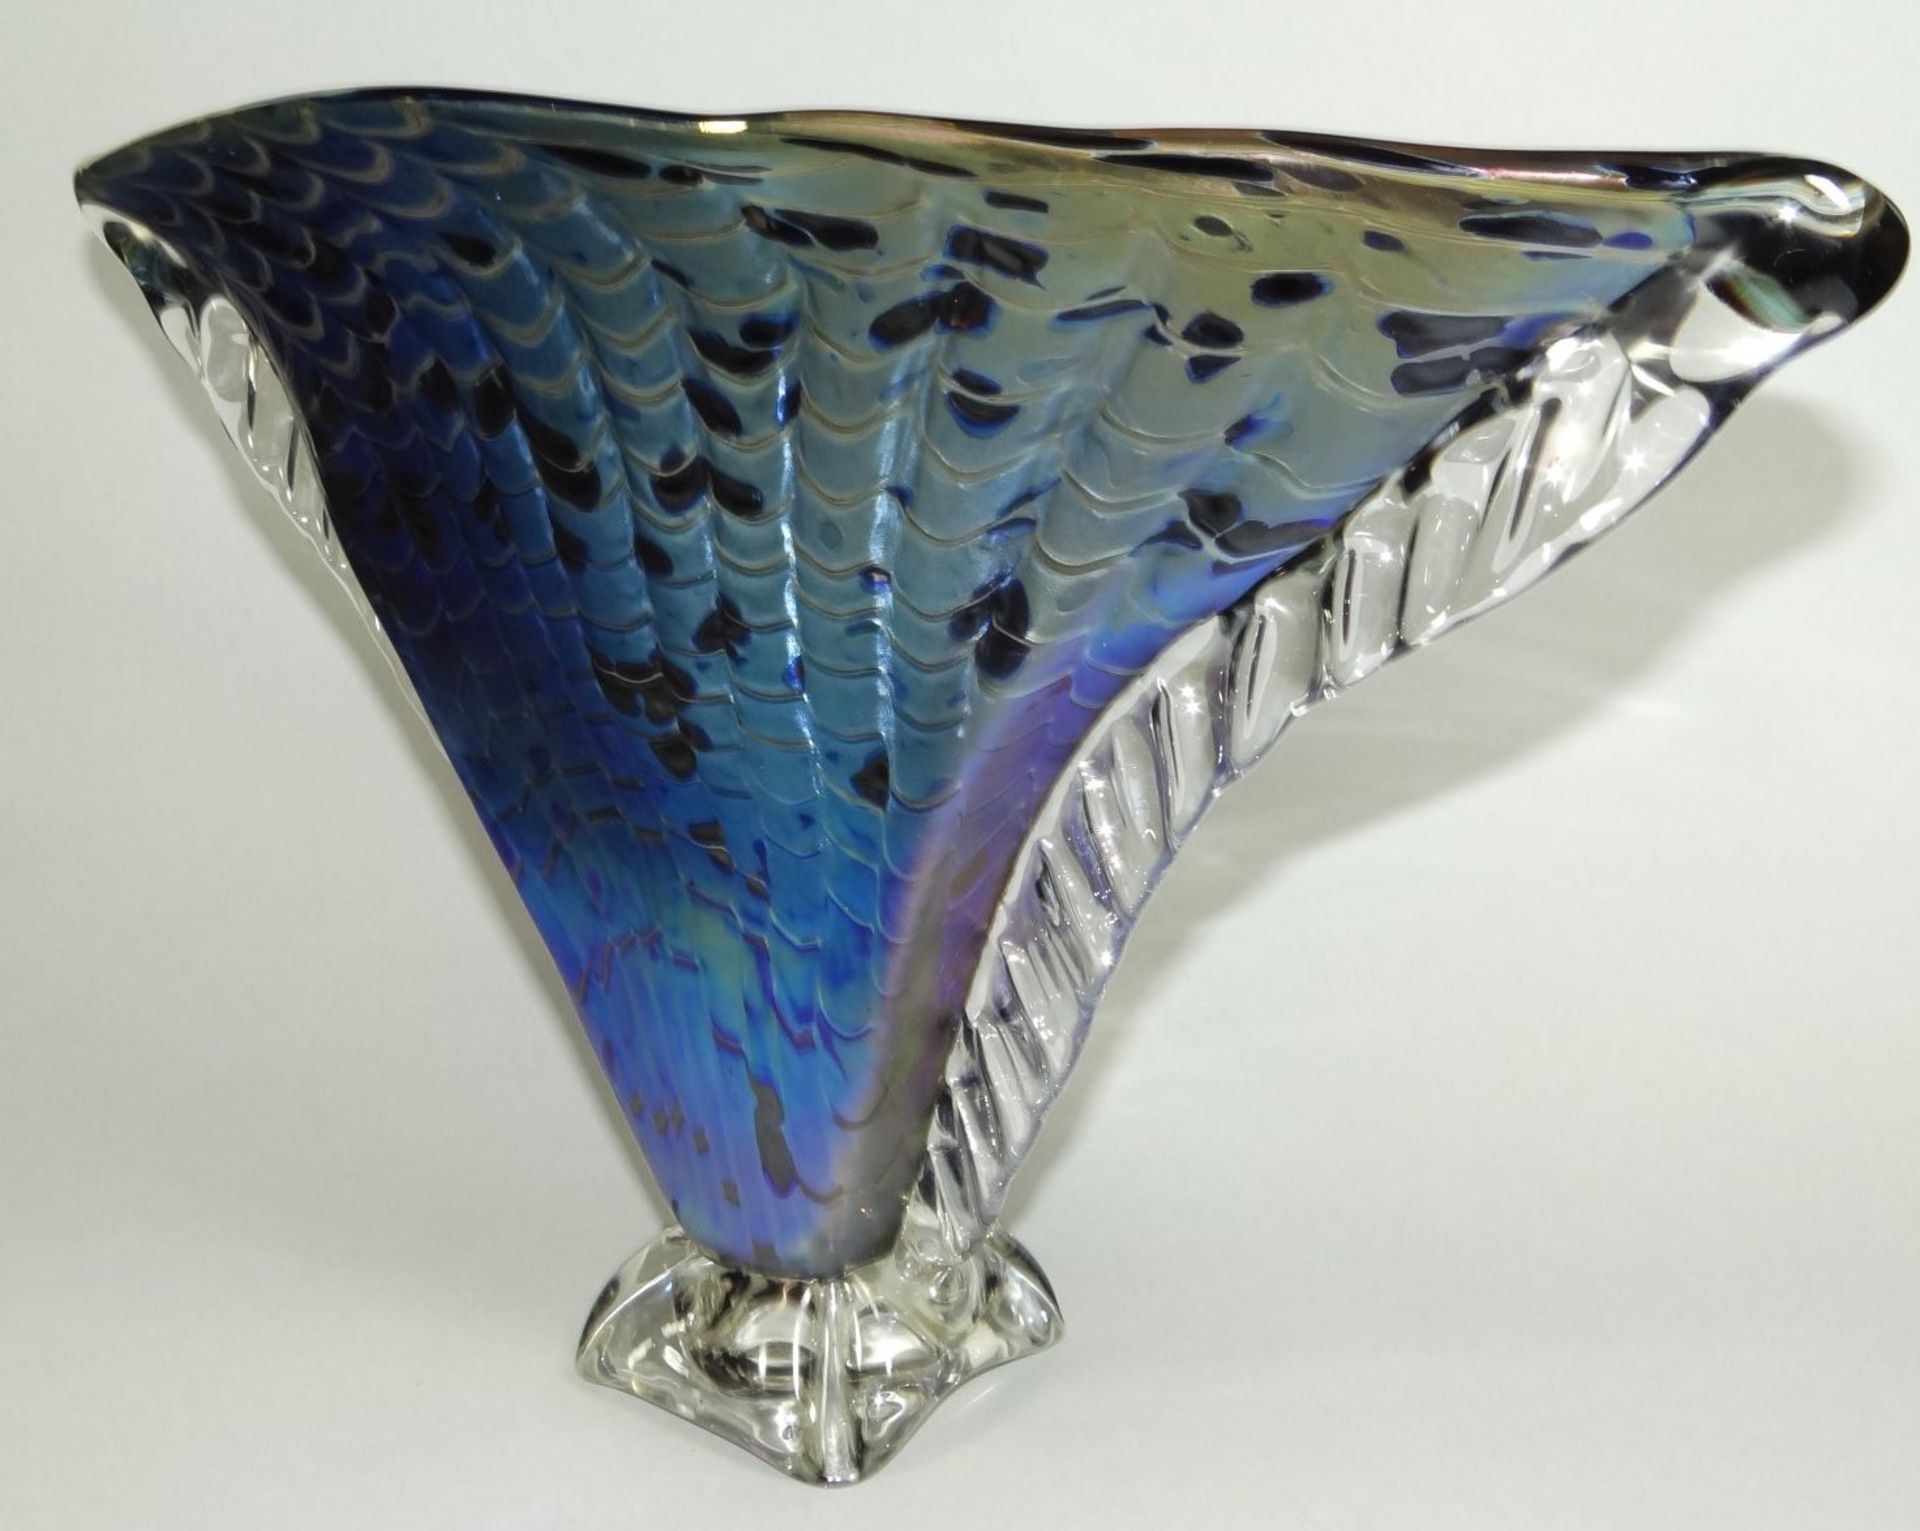 grosse Kunstglasvase,"Heaney glass" handmade in Australia, signiert, dat. 1989 lüstrierend und - Bild 5 aus 10